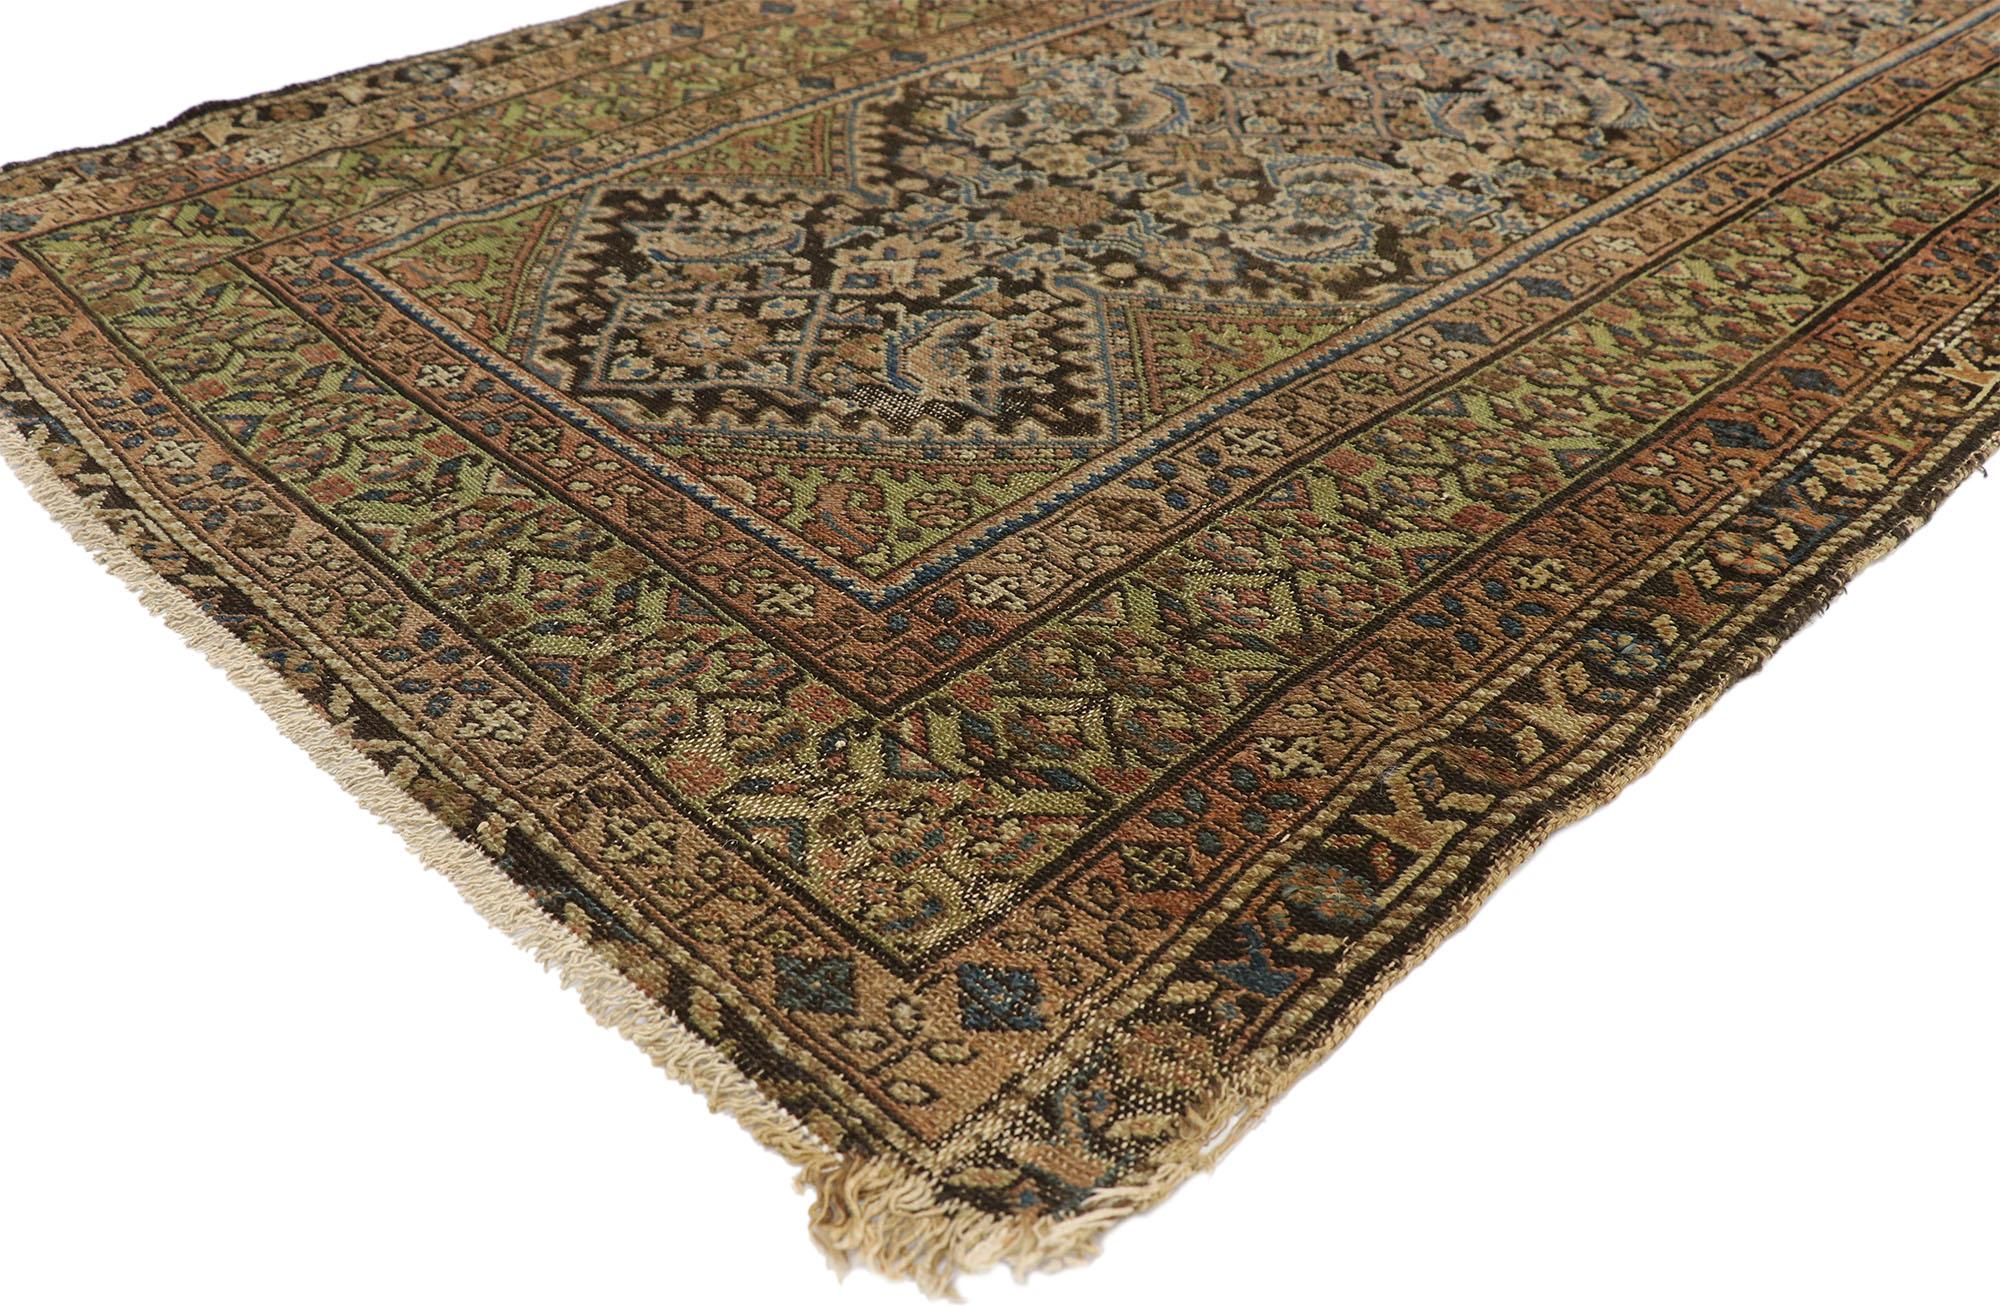 76793 Antiker persischer Malayer-Teppich Läufer, 03'06 x 16'08. Persische Malayer-Teppichläufer, die aus der Region Malayer im westlichen Iran stammen, sind sorgfältig gefertigte Teppiche, die für ihre langen und schmalen Abmessungen bekannt sind,